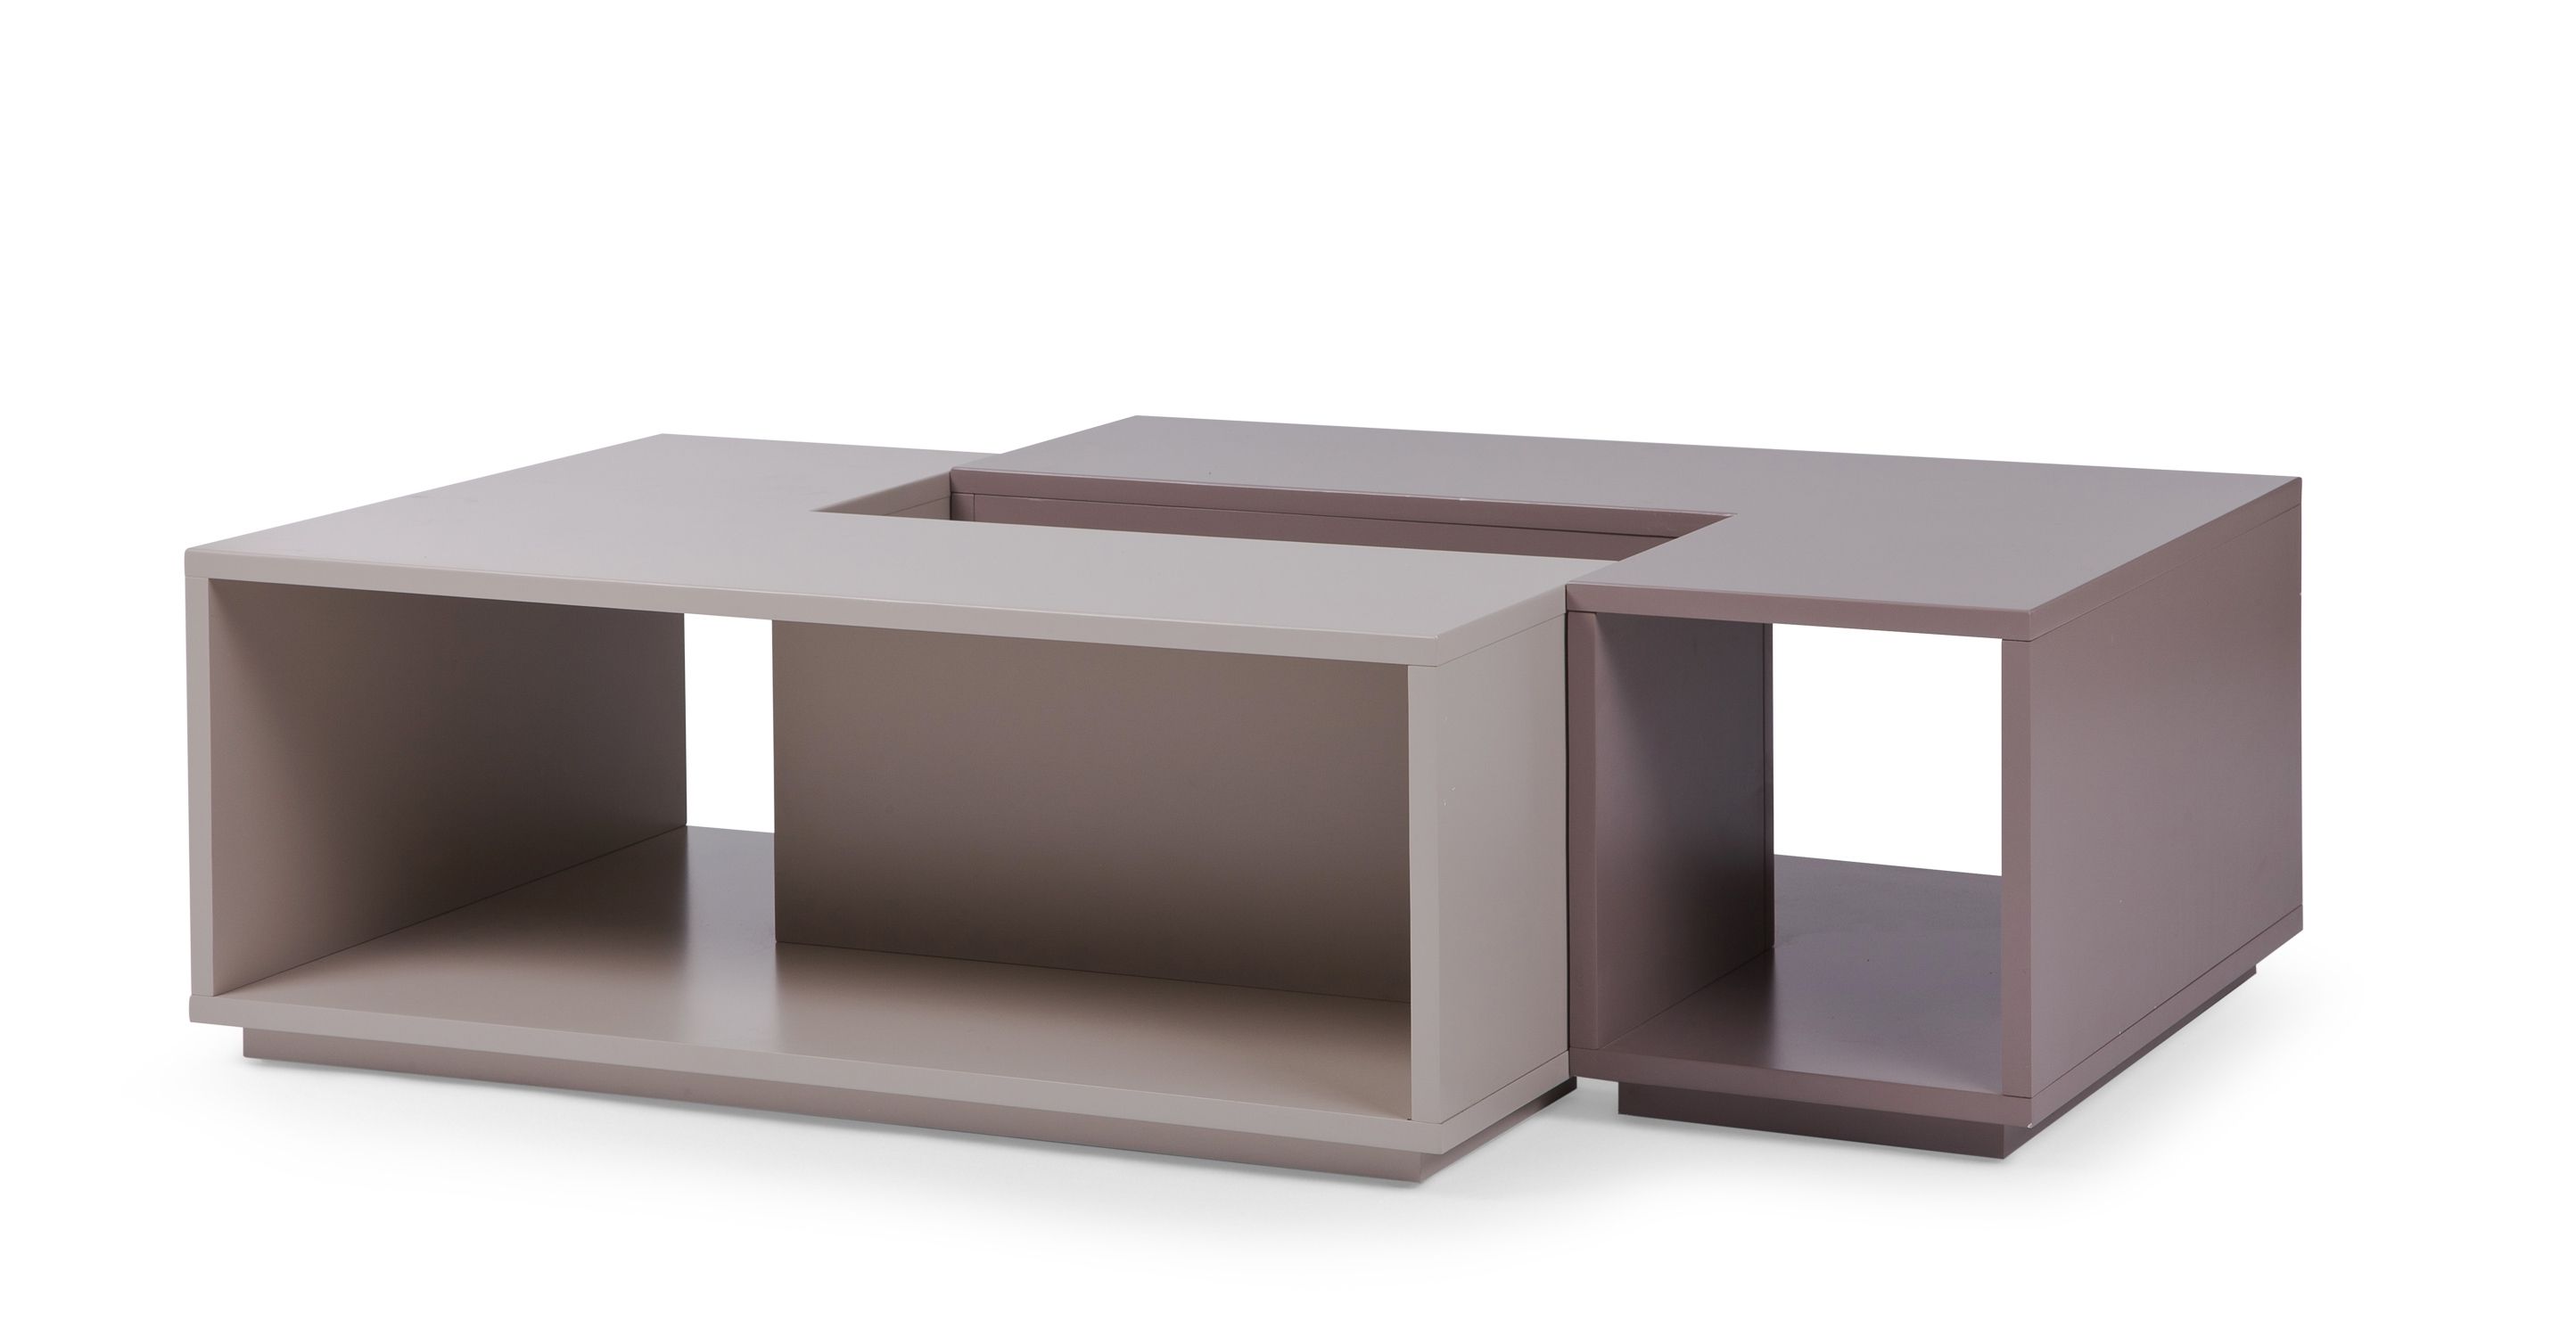 Fabulous Modular Coffee Table With Modular Coffee Table Design 2 Regarding Modular Coffee Tables (Photo 6 of 30)